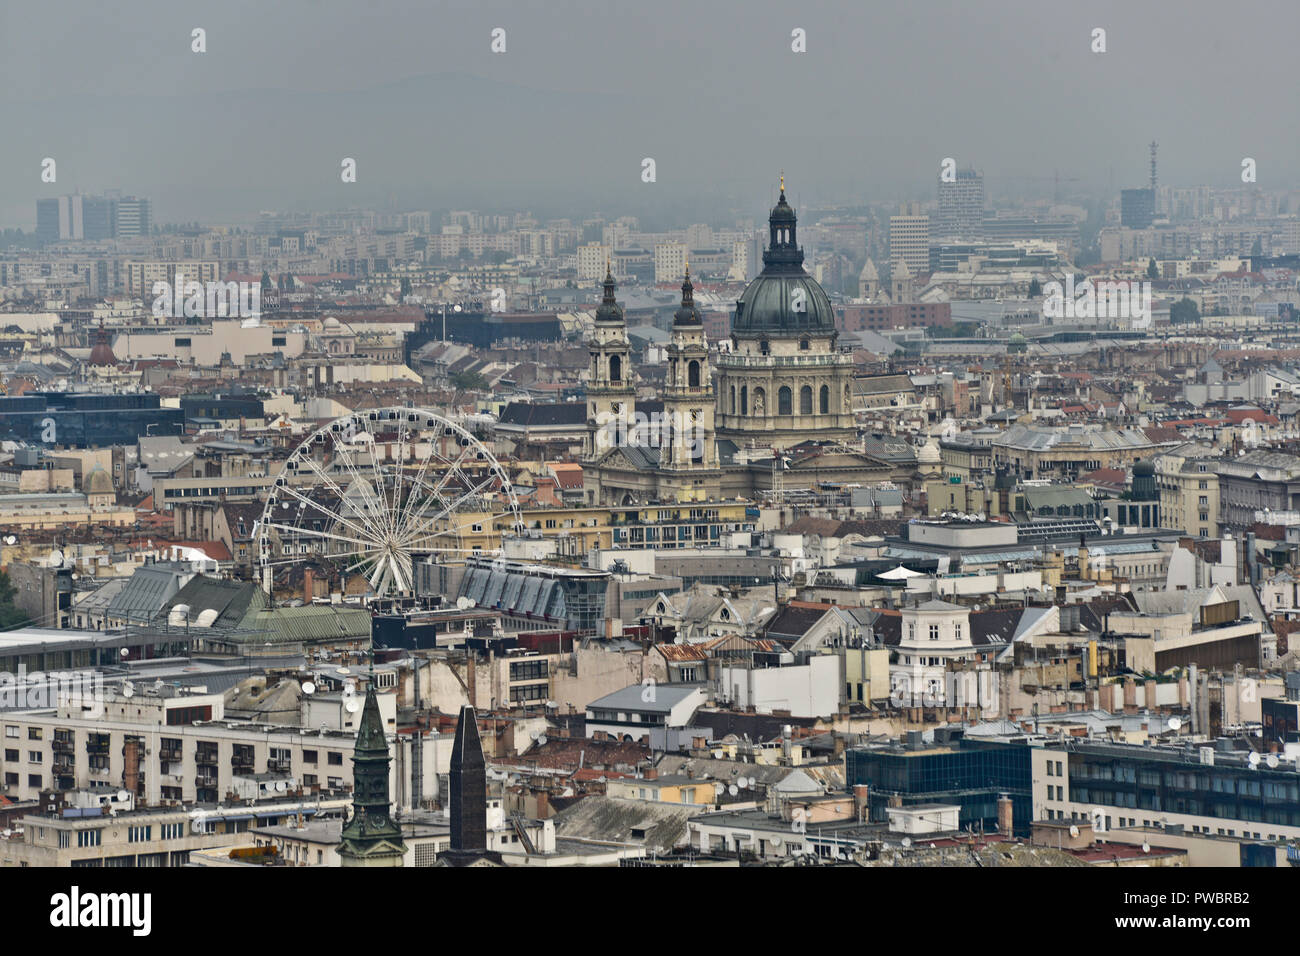 Budapest, vue panoramique de la ville avec la Basilique de St Stephen, à partir de la colline Gellért. Hongrie Banque D'Images